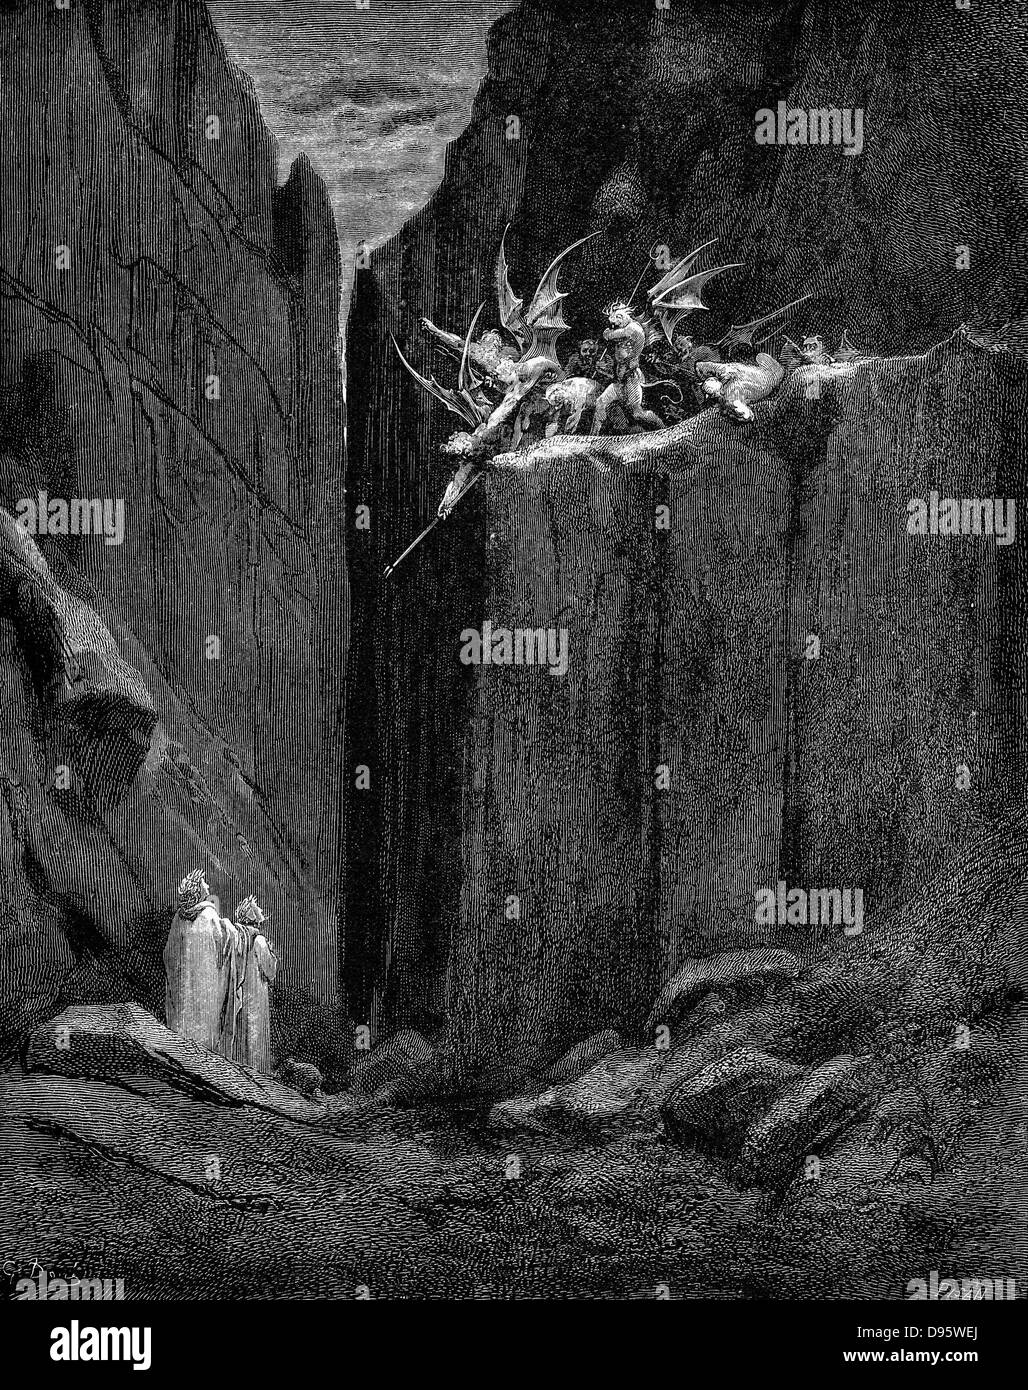 Dante von Virgil vor Schaden geschützt, die von Dämonen. Dante Alighieris "Inferno", erster Teil seiner 'Divina Commedia" (Die Göttliche Komödie) Canto XXXIII. Von der Ausgabe 1863 von Gustave Dore dargestellt. Holzstich Stockfoto